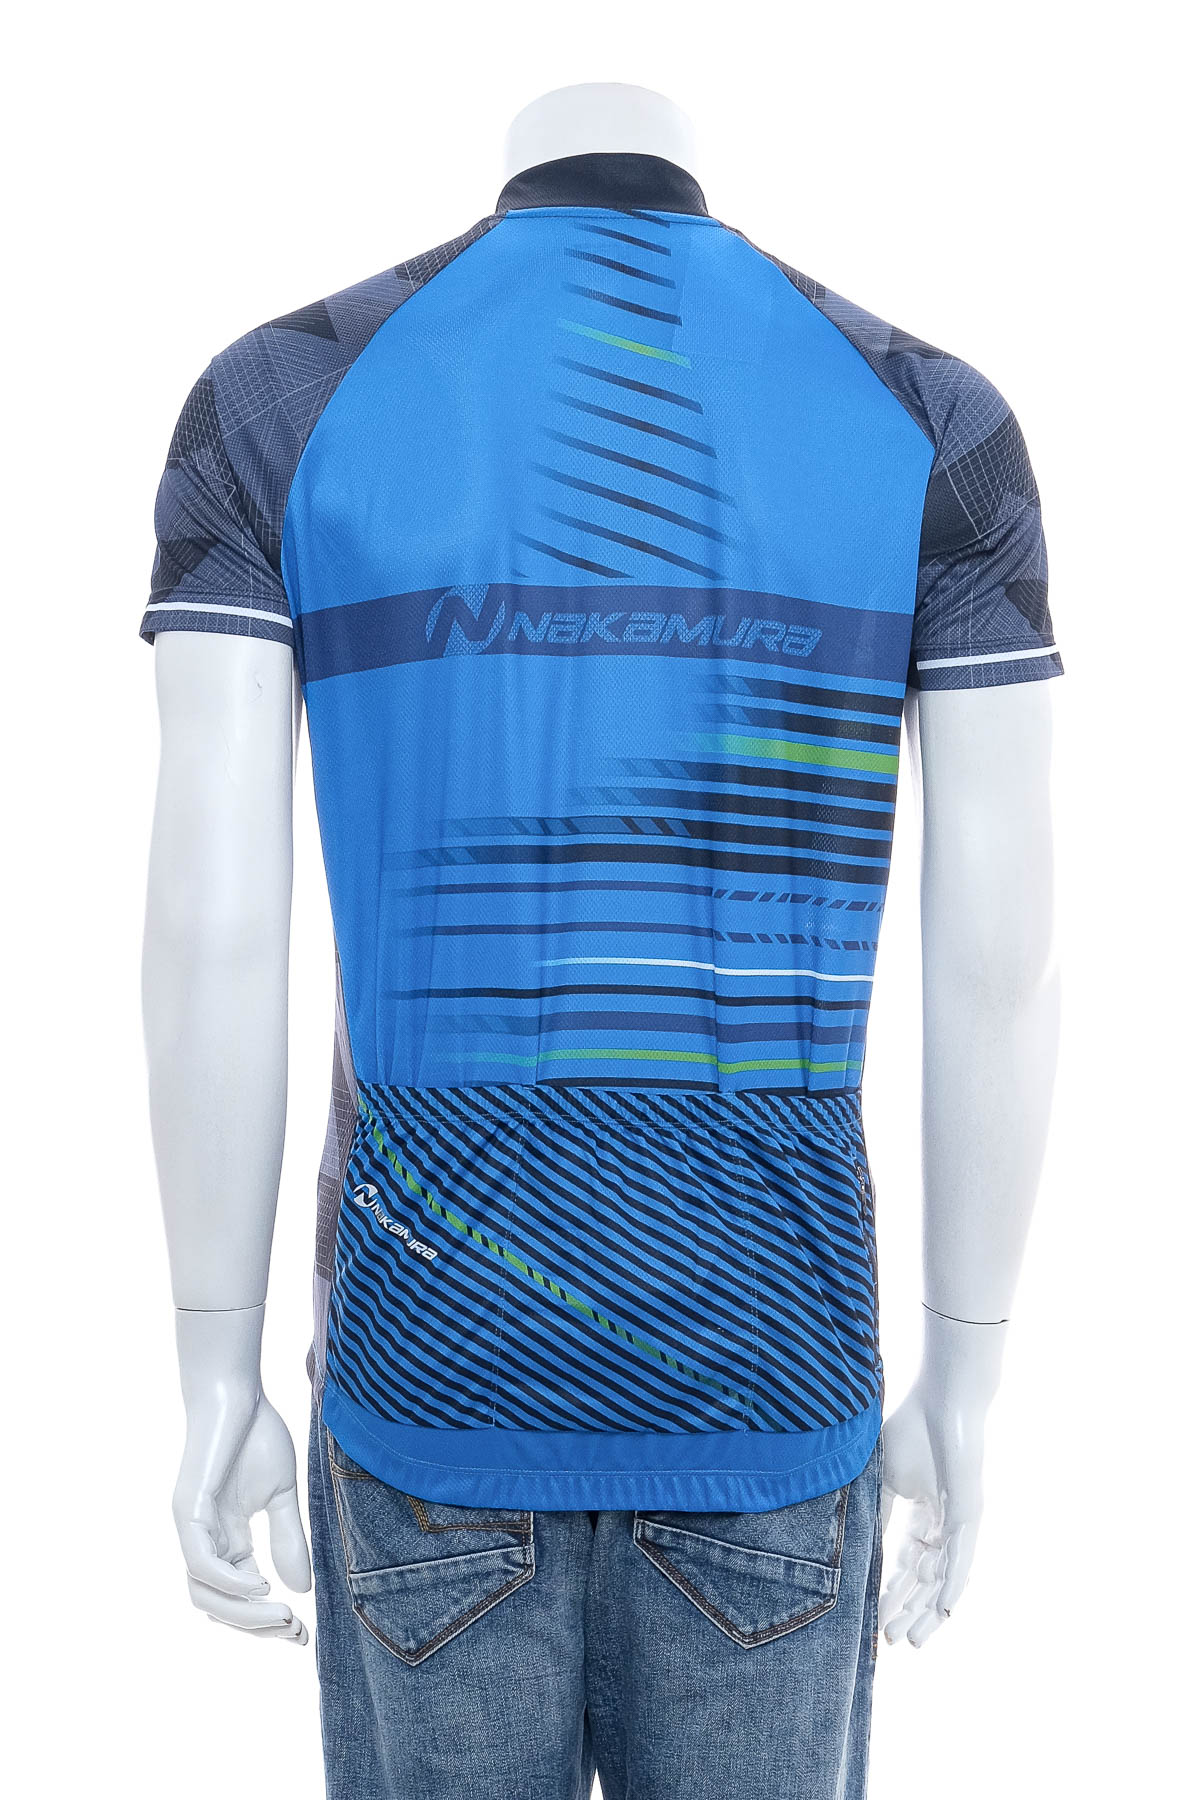 Αντρική μπλούζα Για ποδηλασία - Nakamura - 1